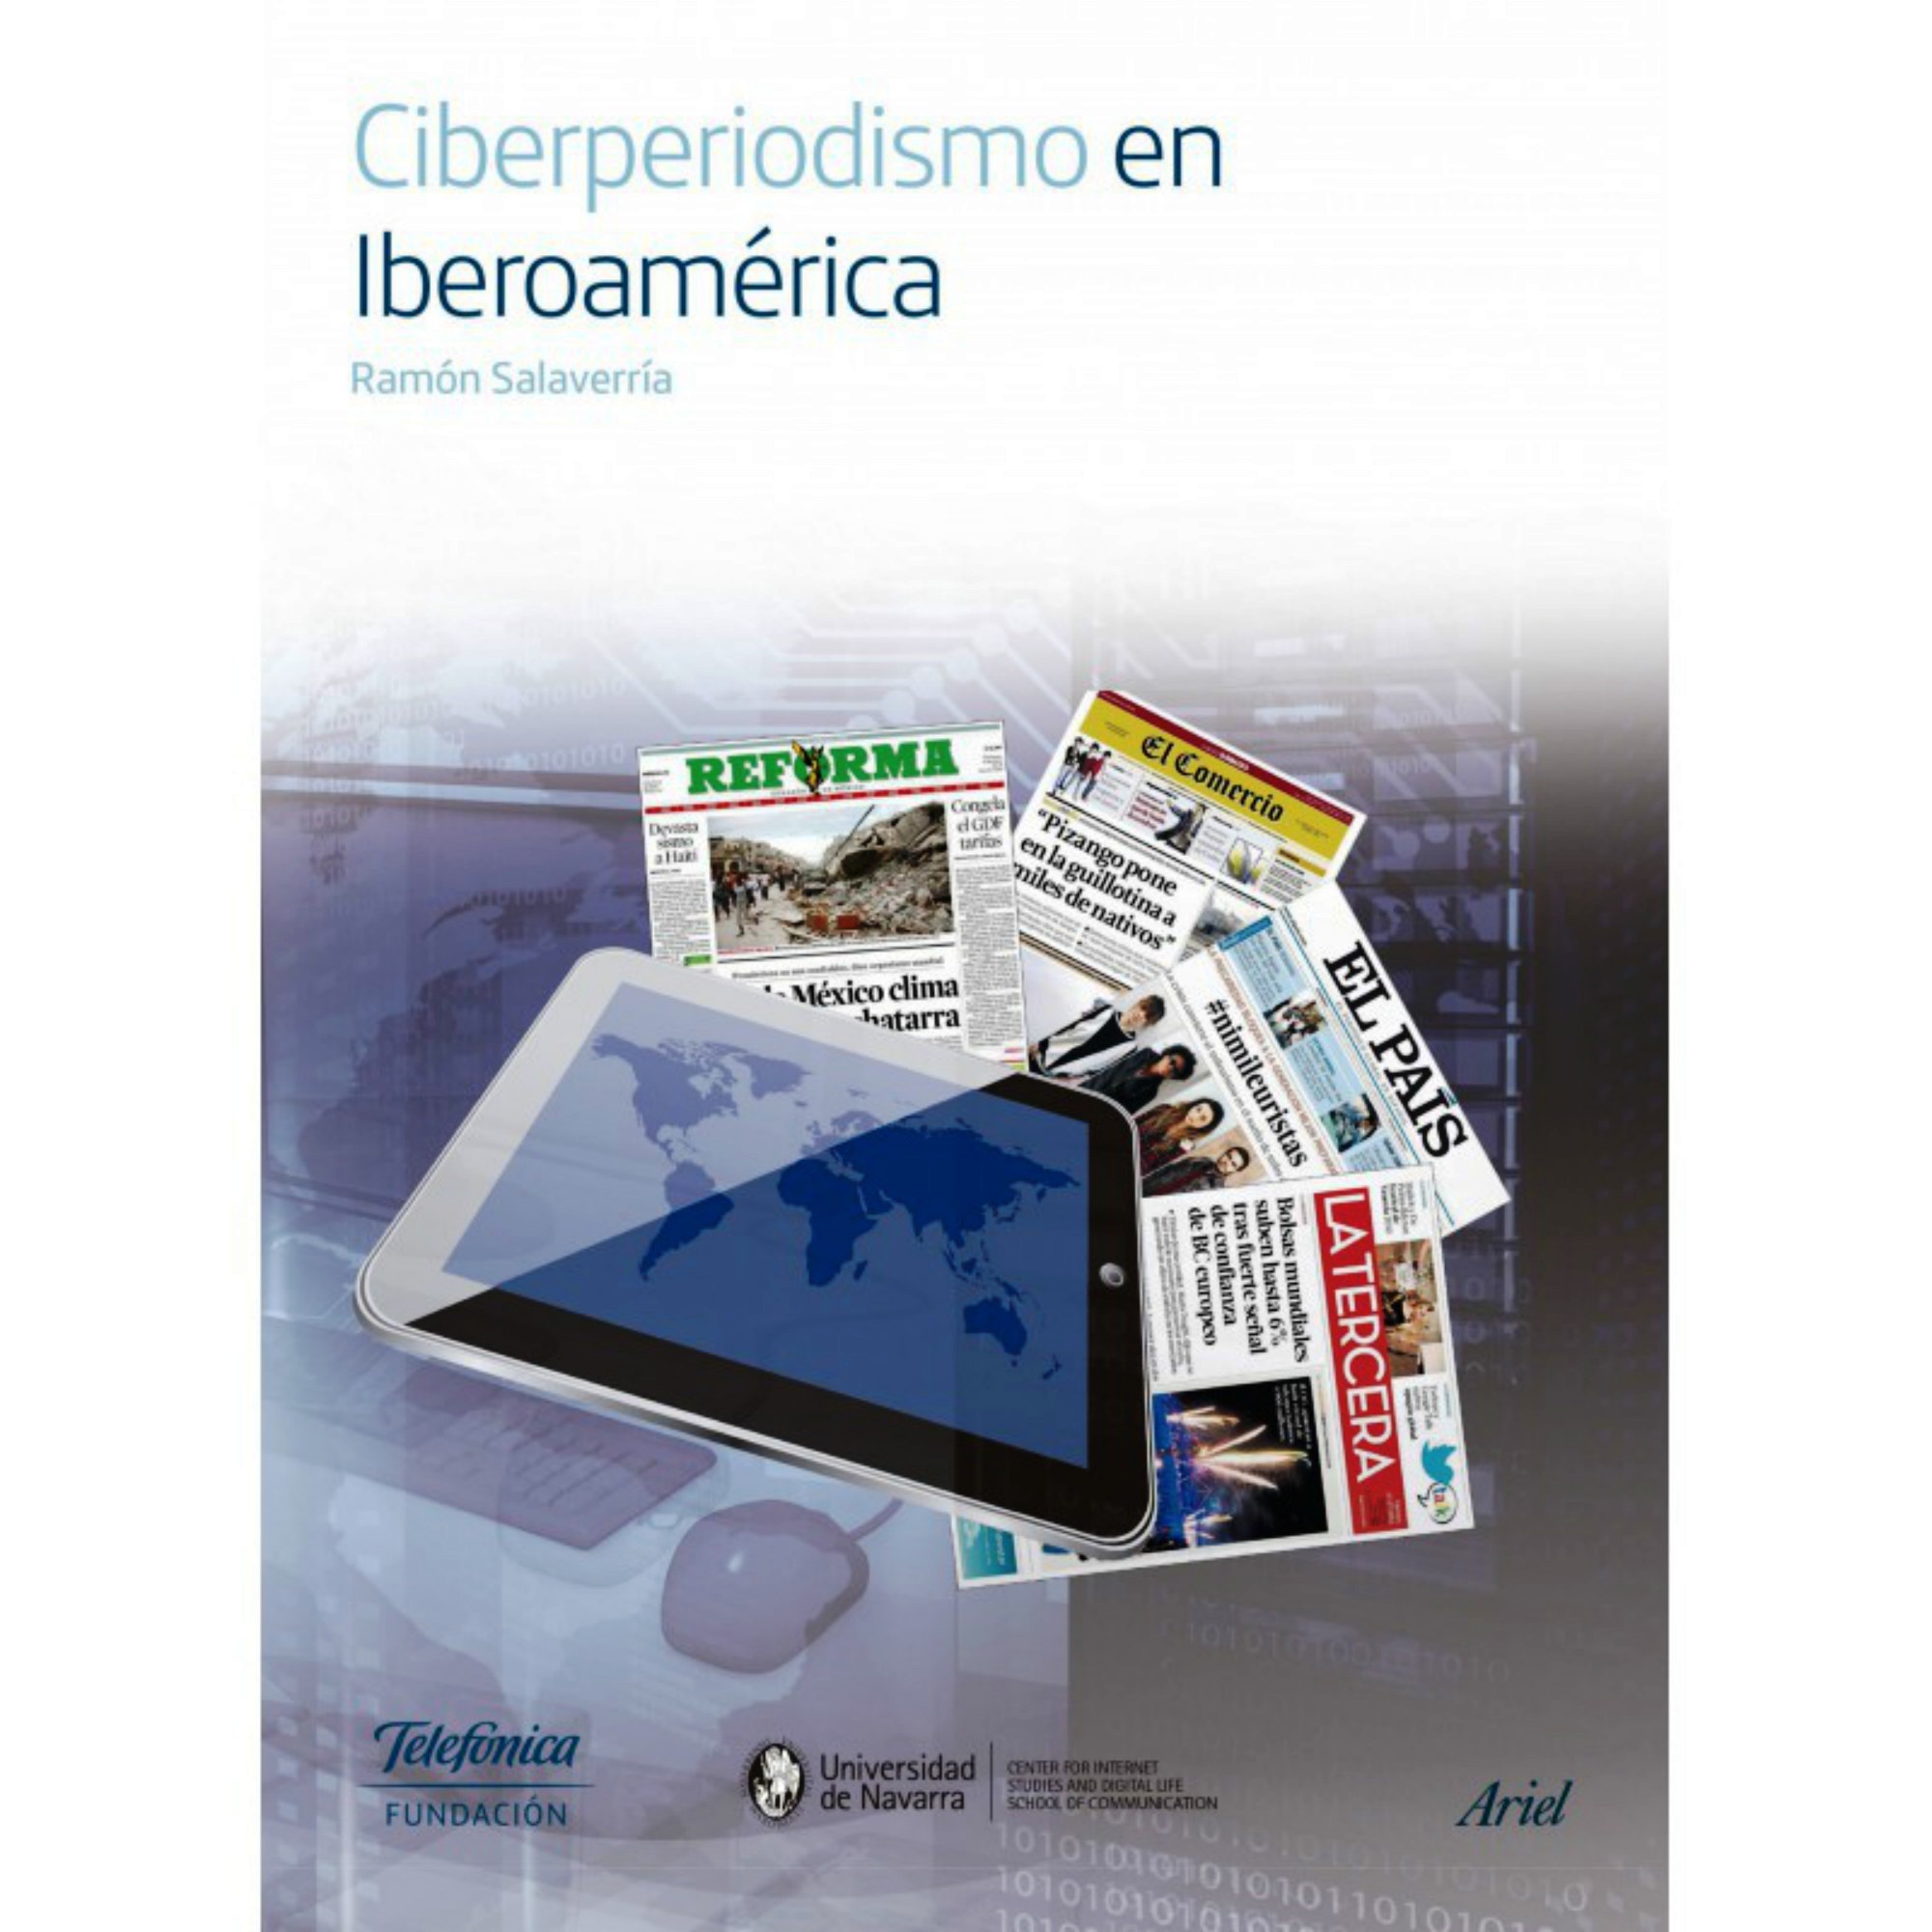 El libro recoge la historia de los primeros 20 años del ciberperiodismo iberoamericano.